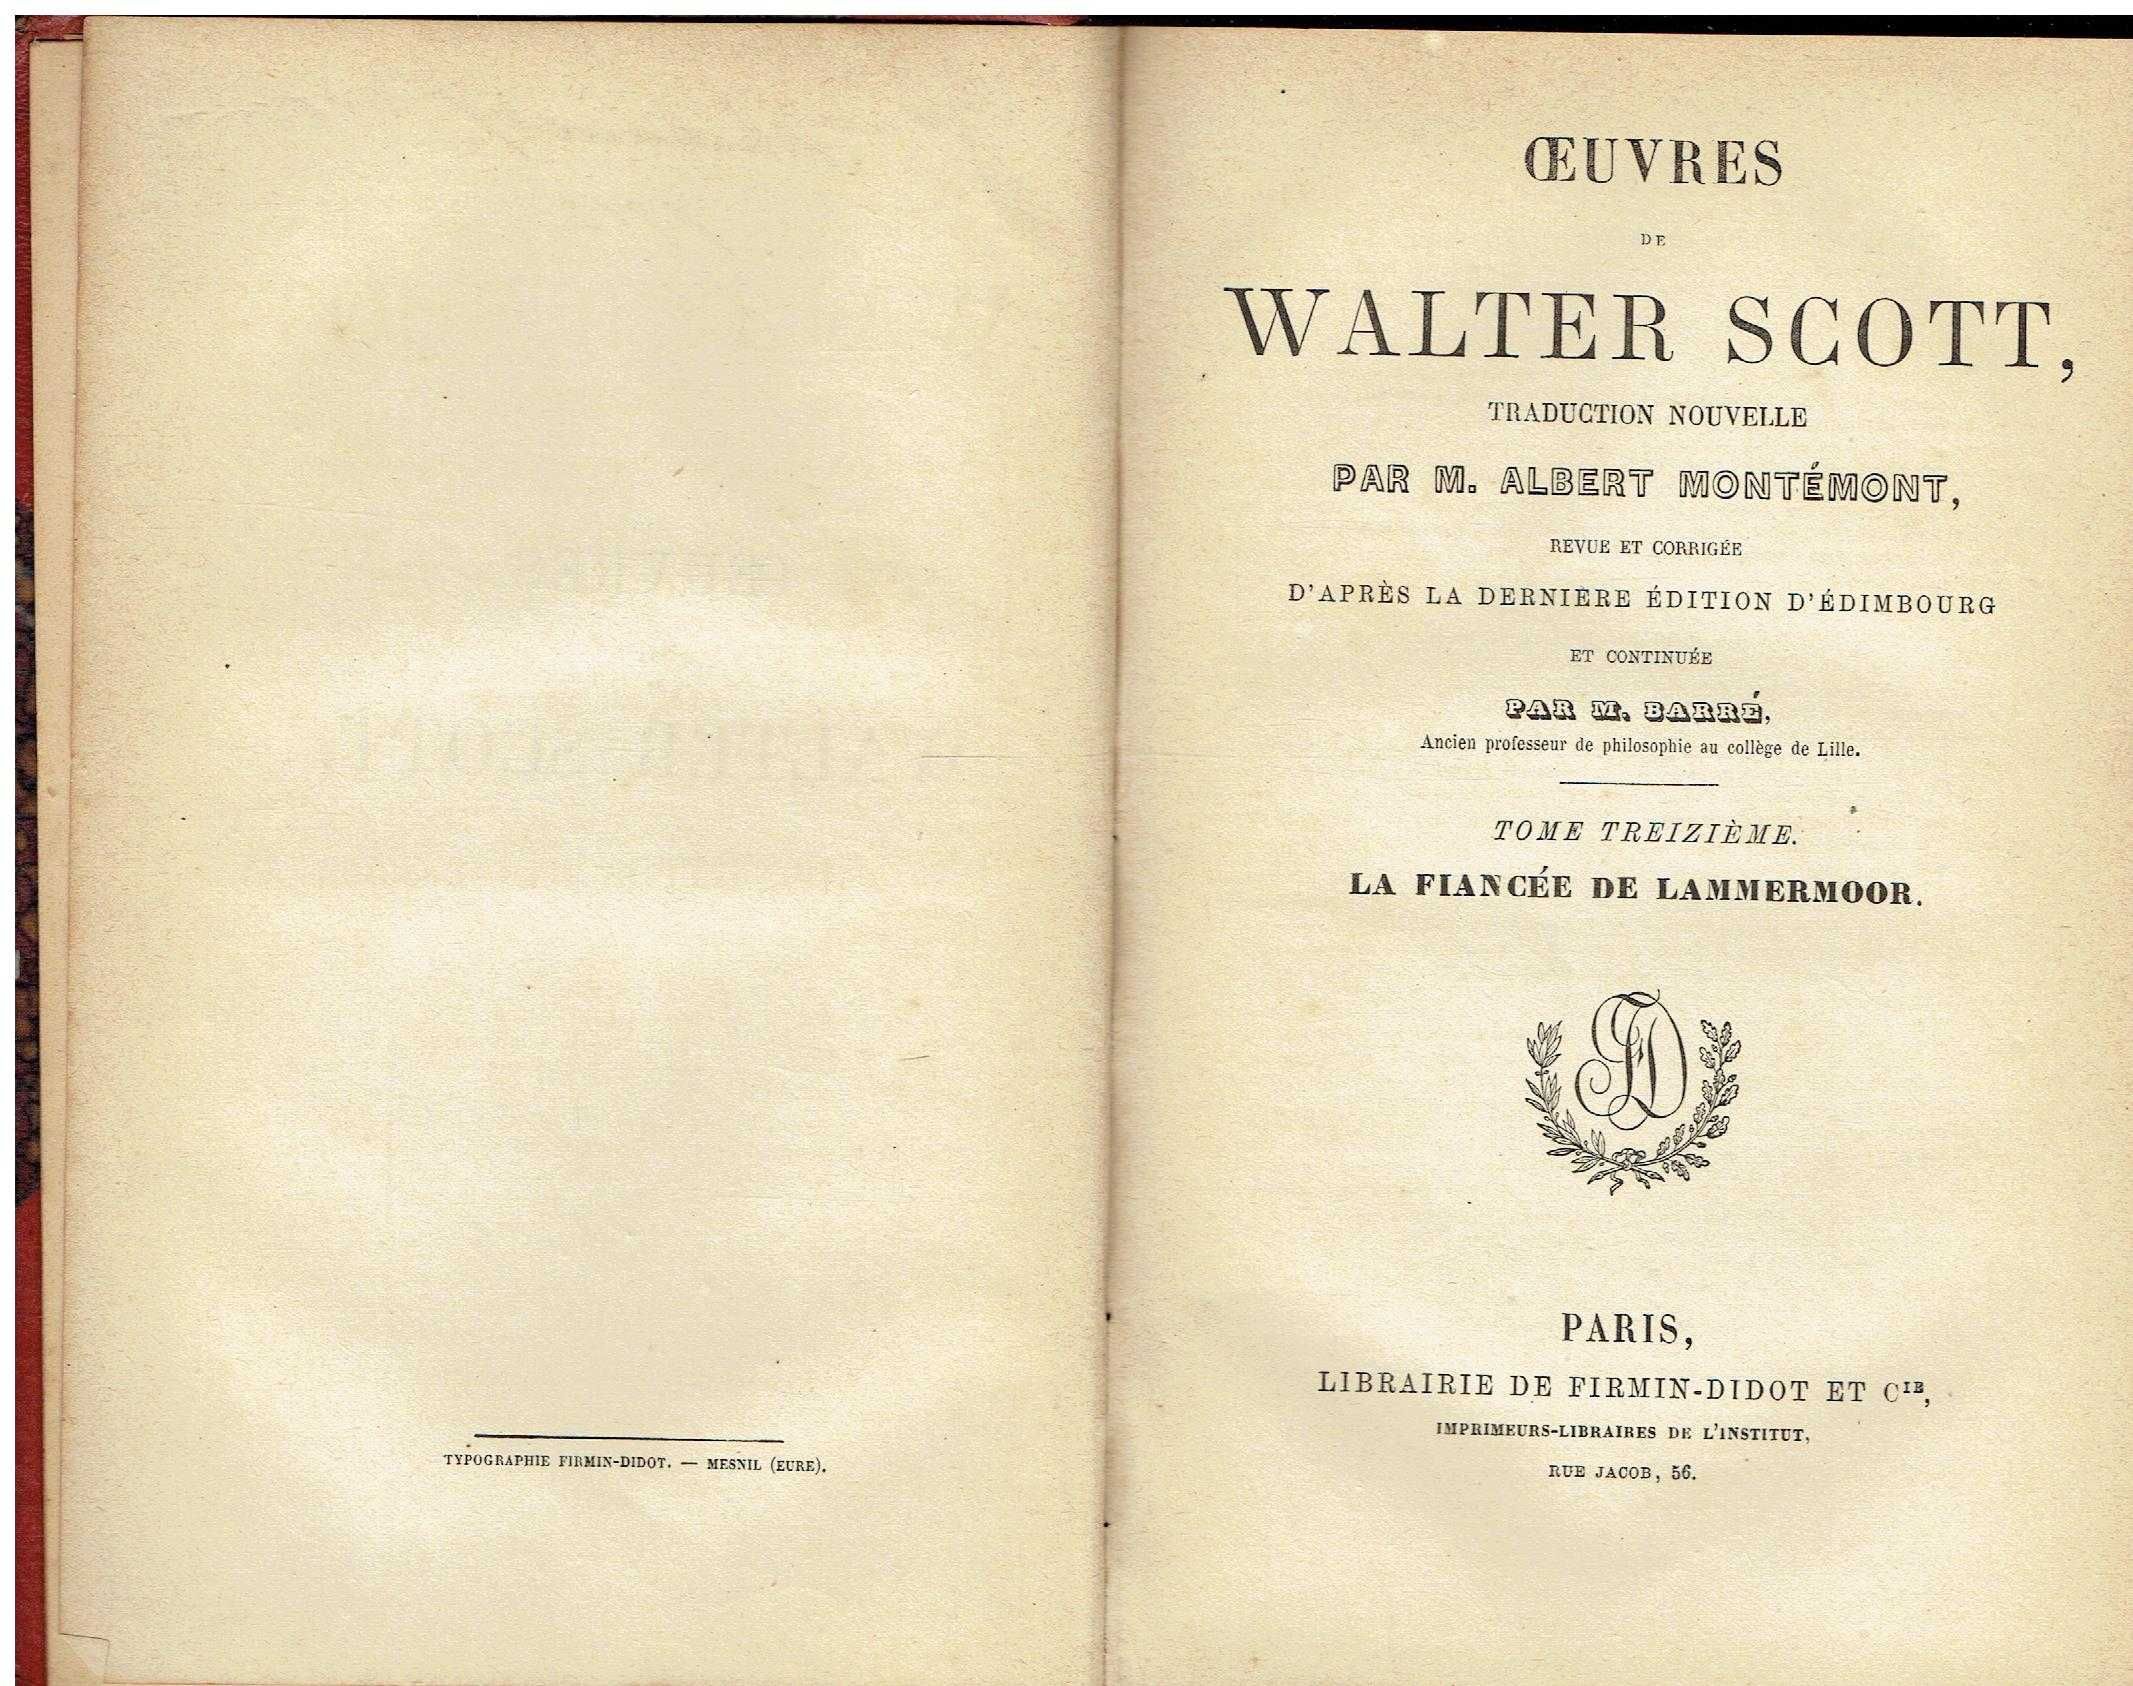 11008

Oeuvres de Walter Scott